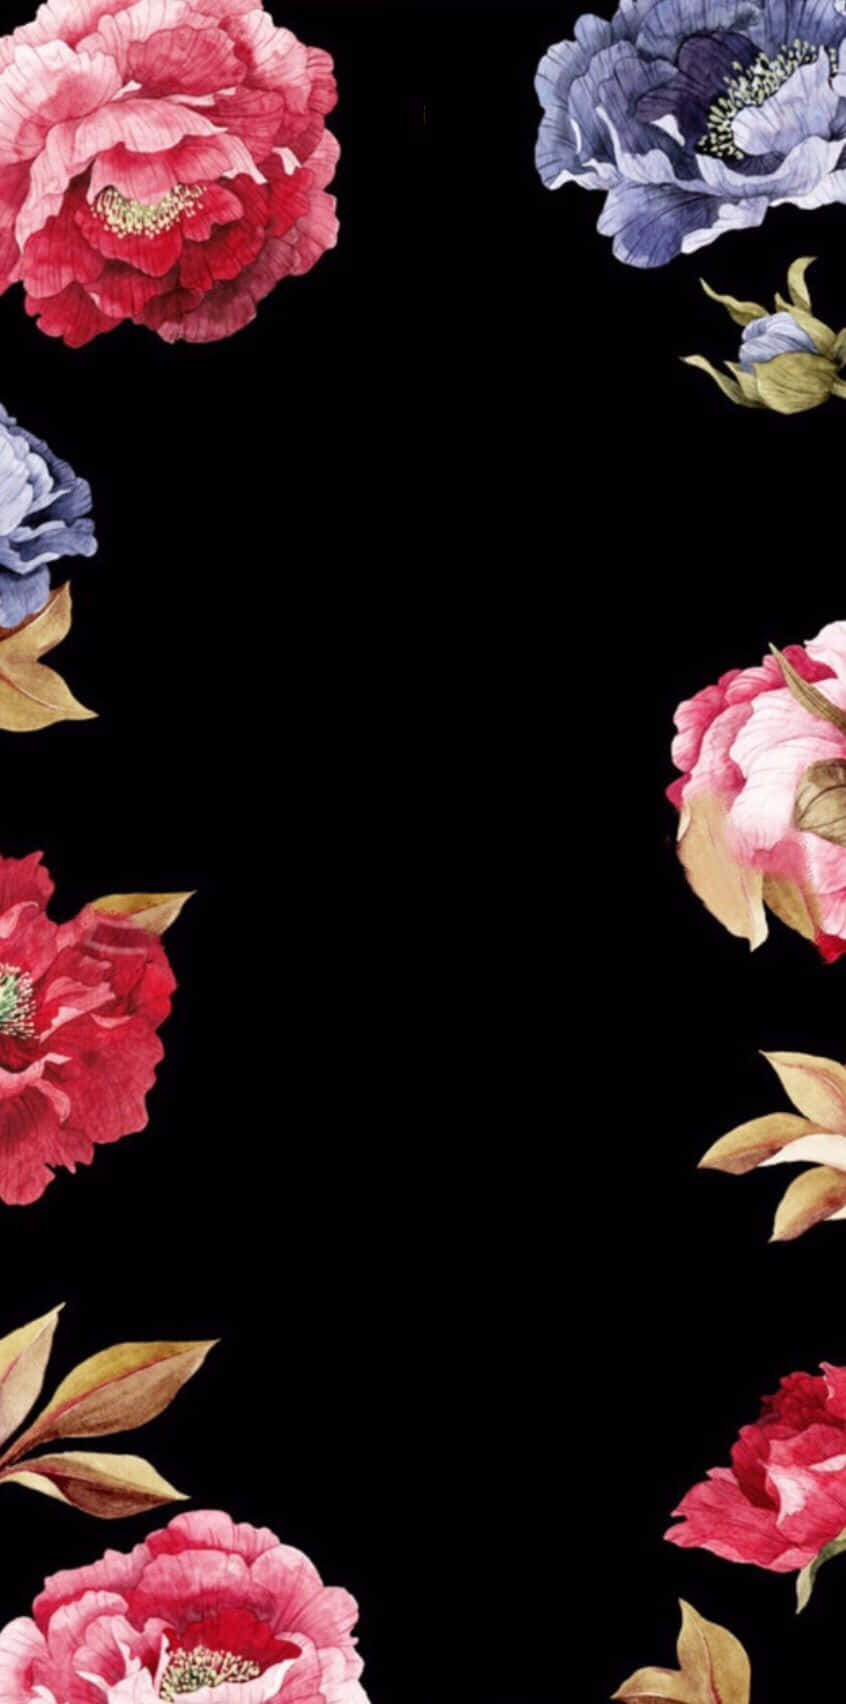 Unavibrante Gama De Flores En Negro Y Rosa. Fondo de pantalla